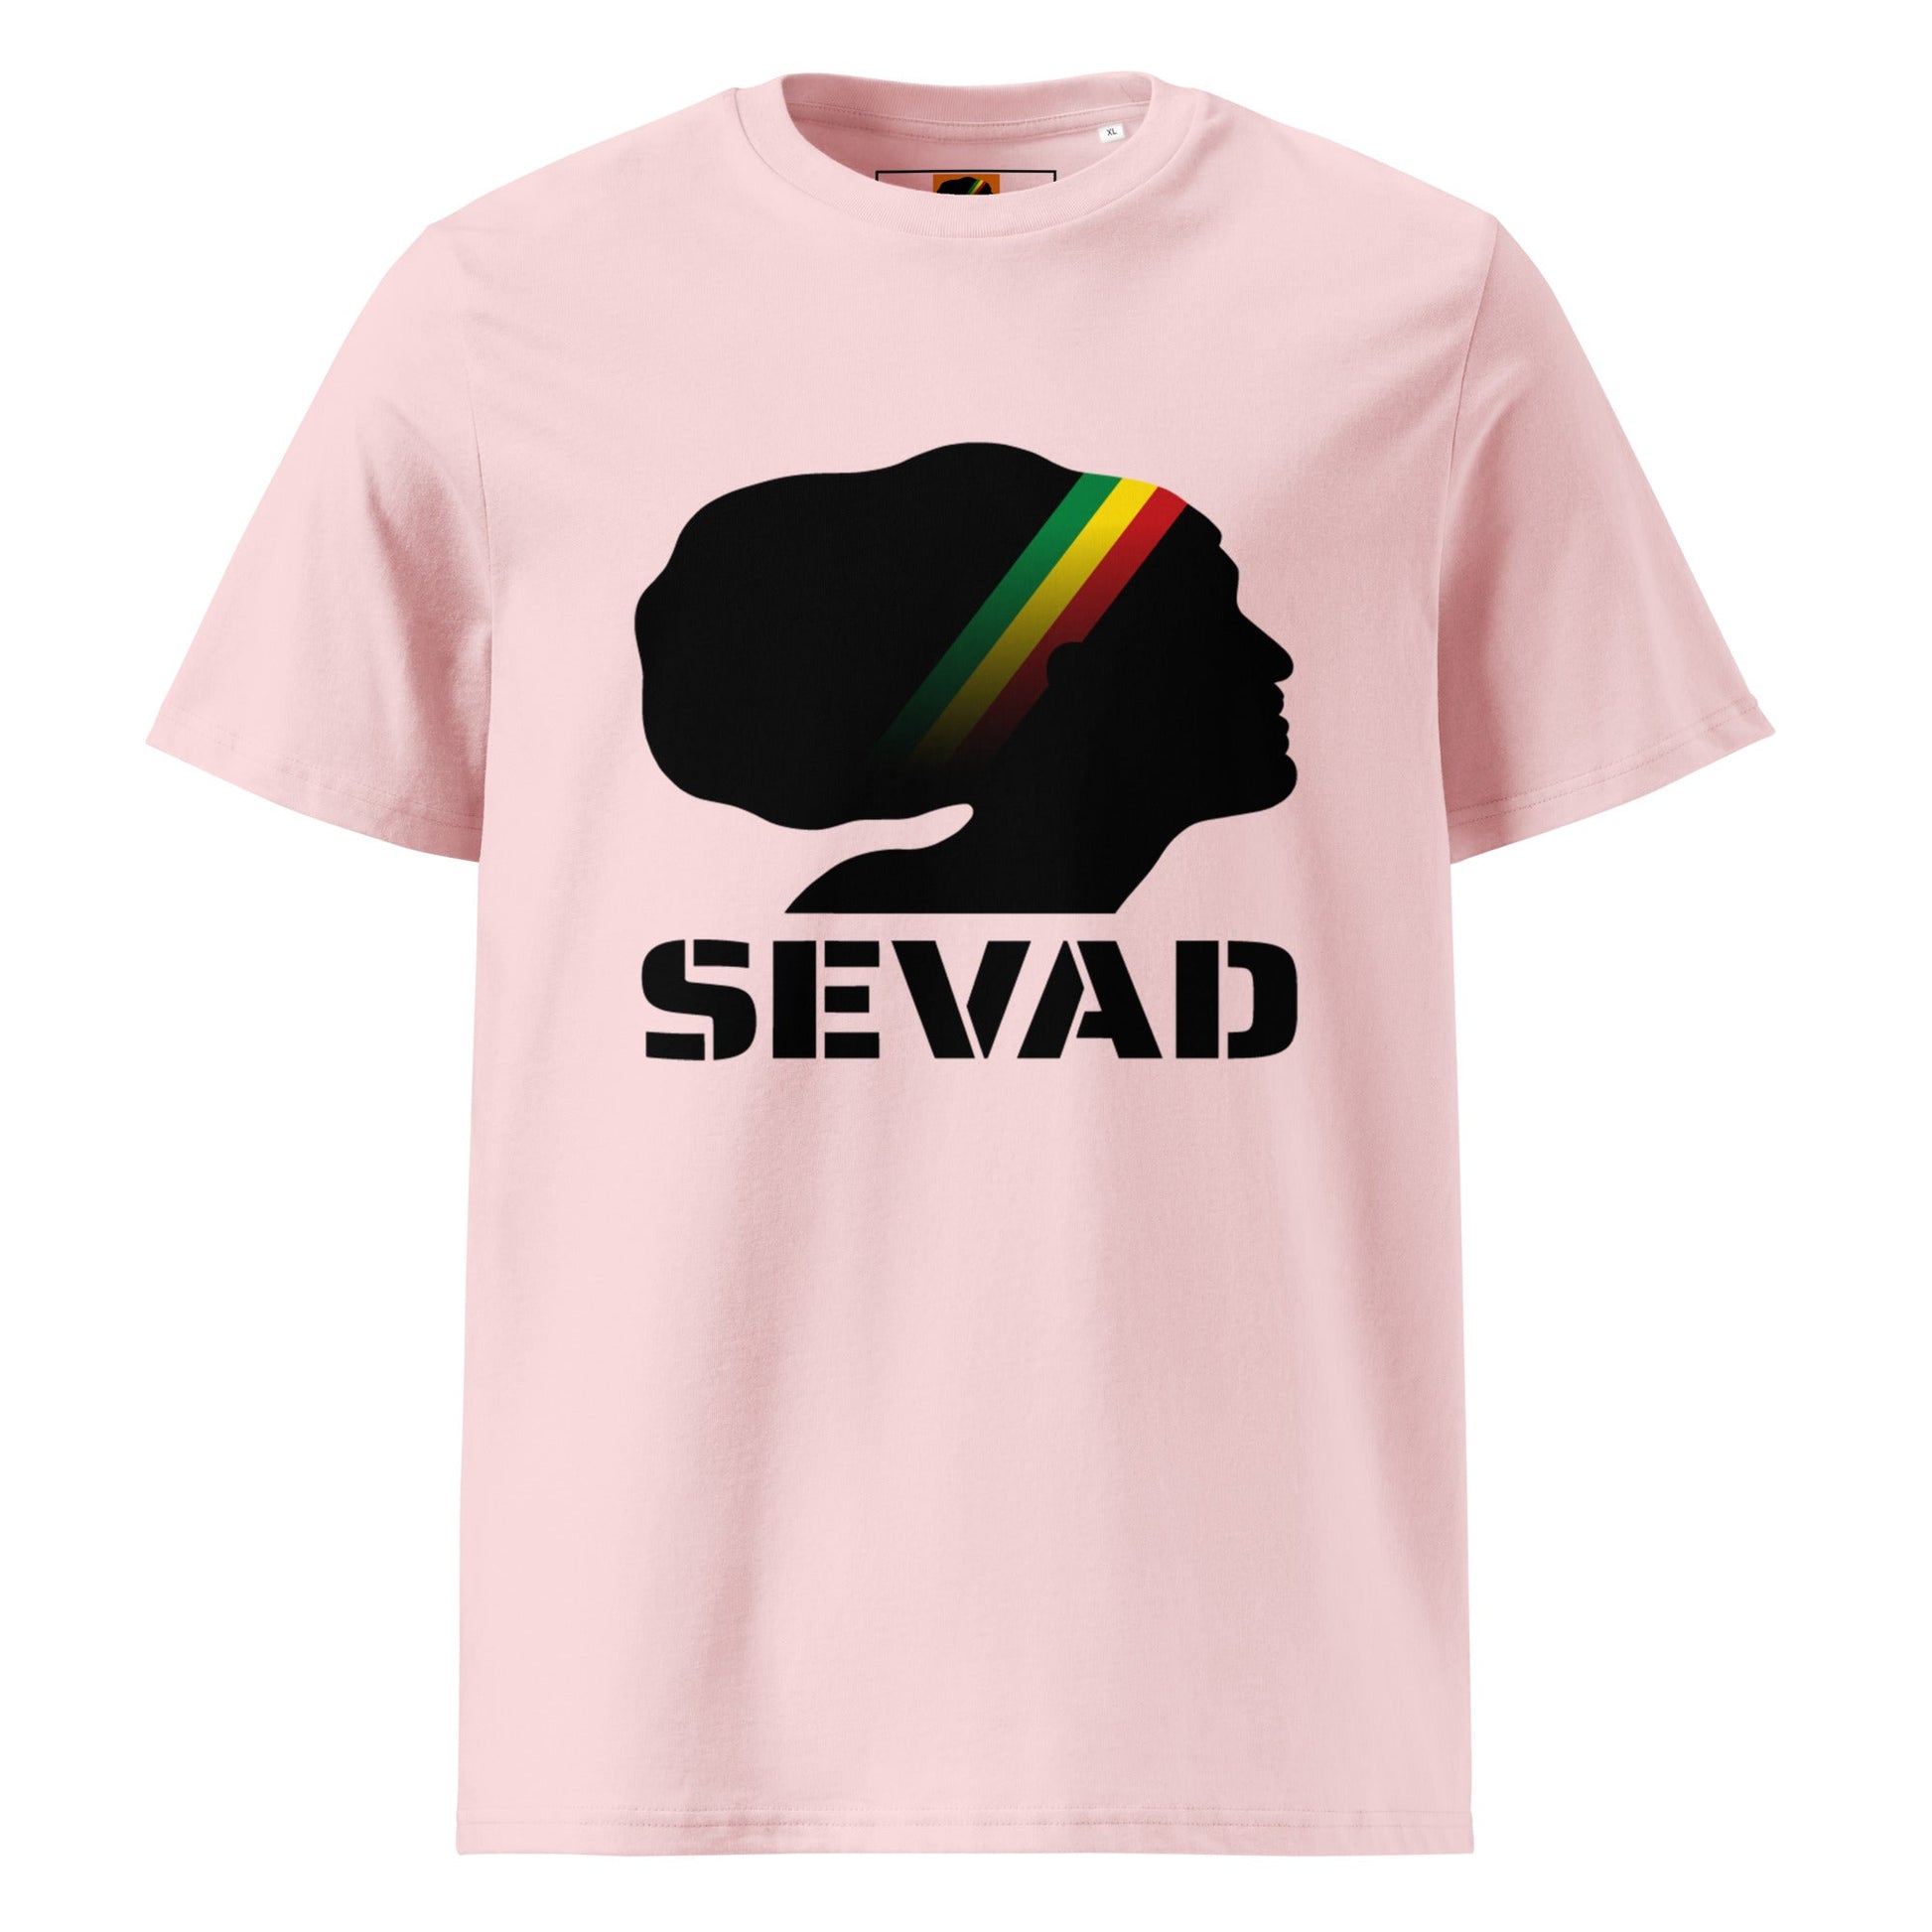 SEVAD: Unisex organic cotton t-shirt - SEVAD MUSIC HOUSE - T-Shirt - SEVAD MUSIC HOUSE - 7078733_17412 - Cotton Pink - S - SEVAD: Unisex organic cotton t-shirt